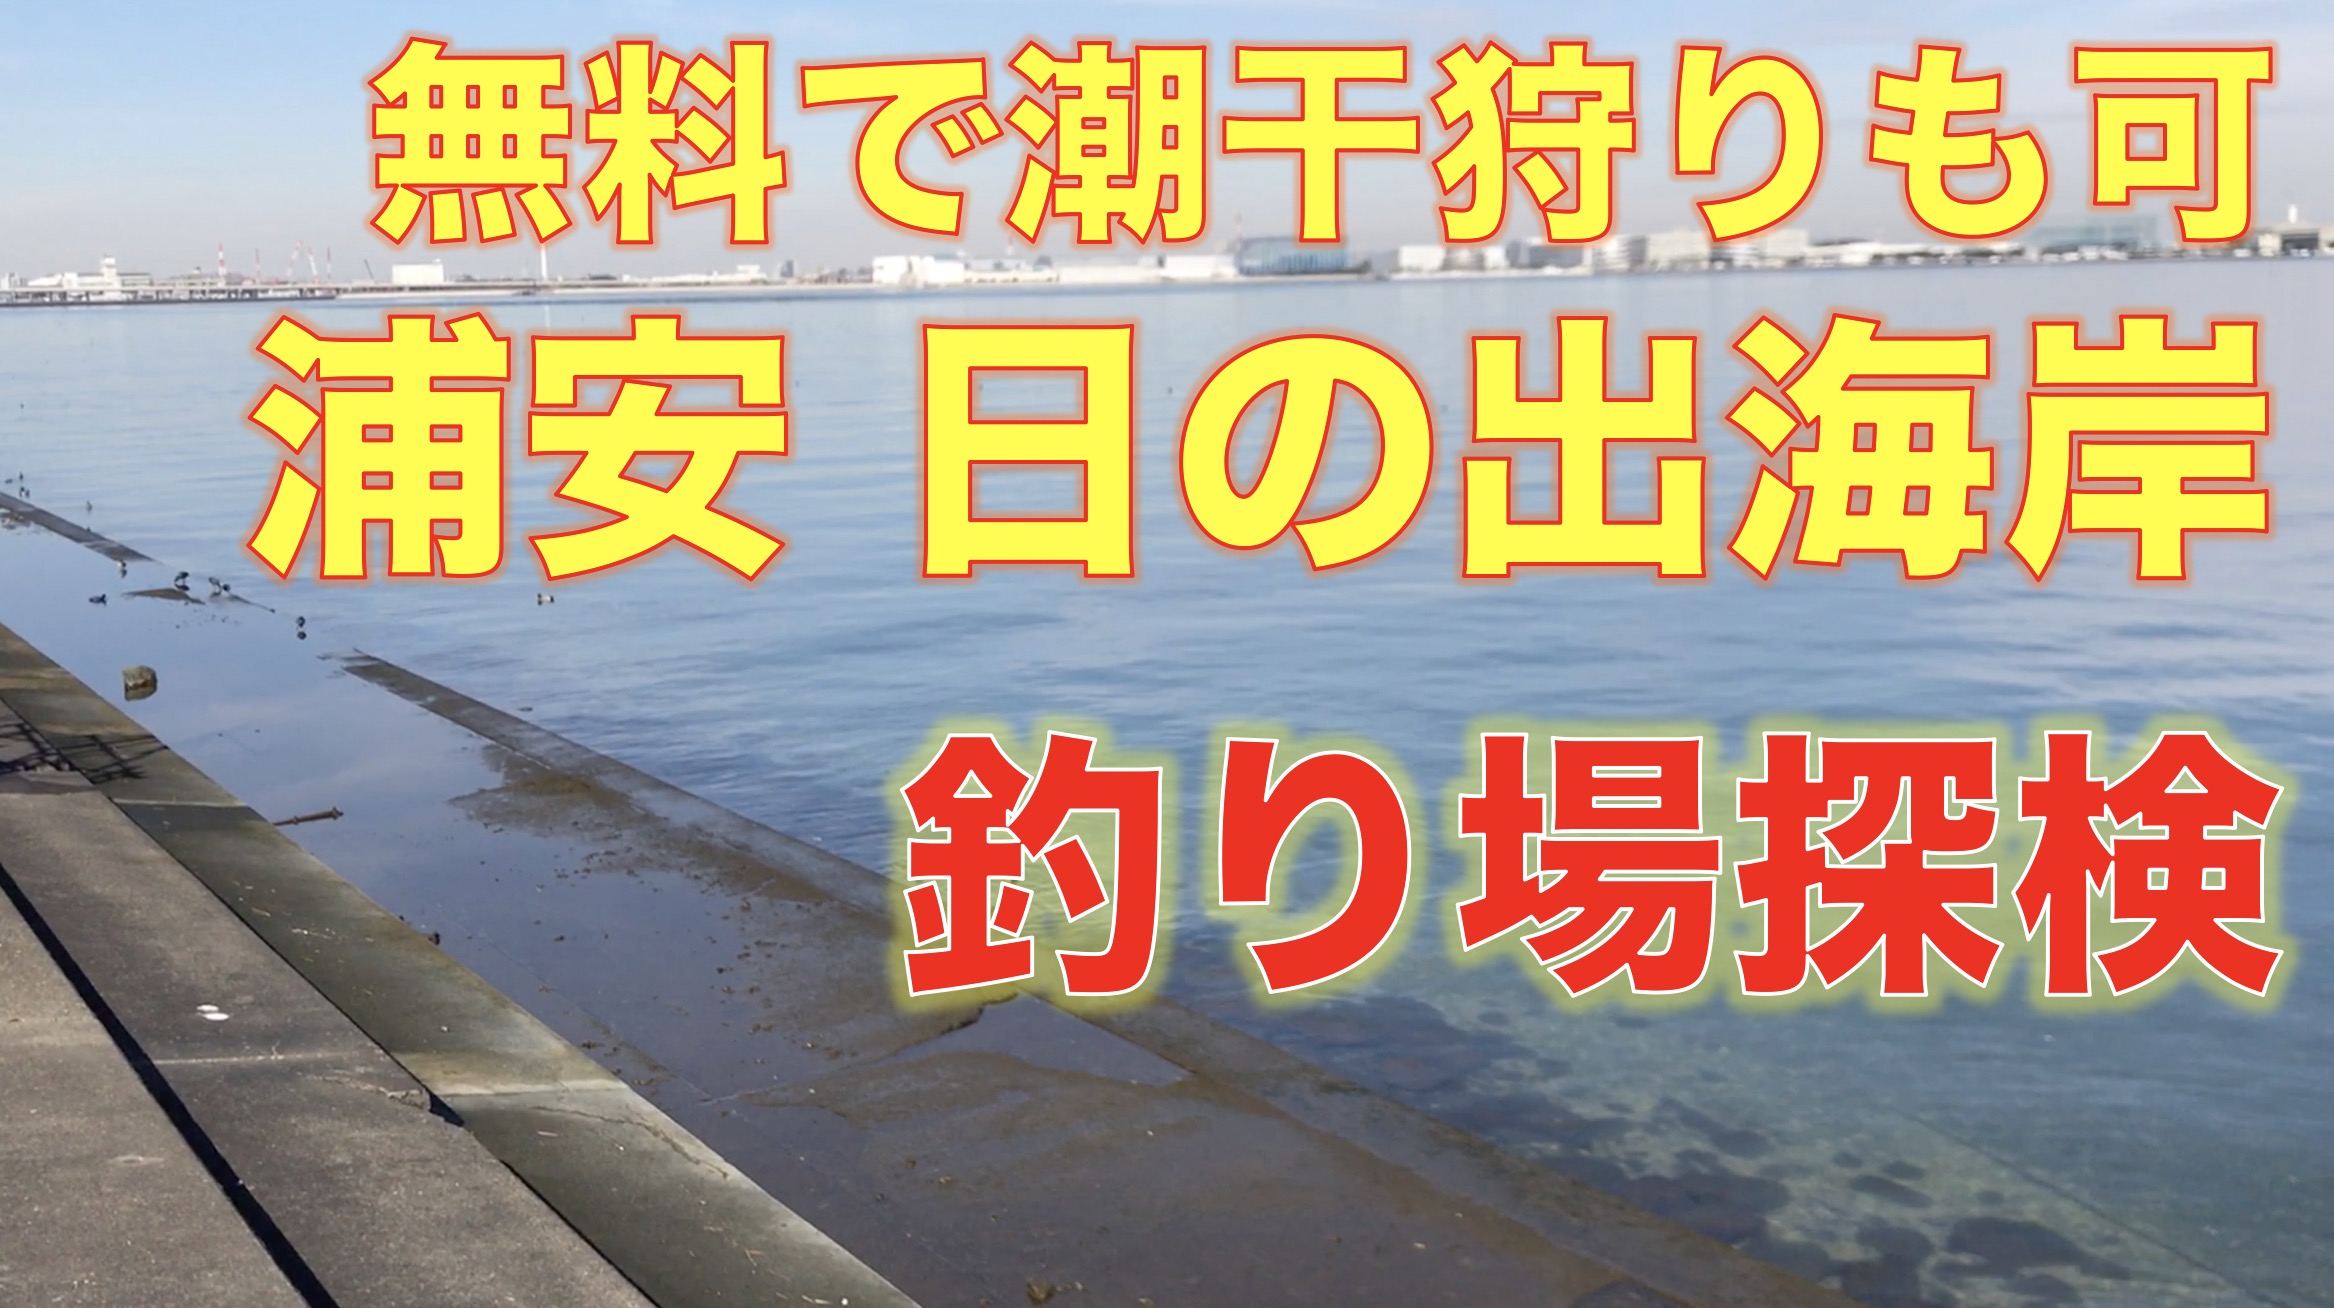 千葉県 袖ヶ浦海浜公園が釣り禁止に 東京湾奥釣り場探検隊 動画で東京 千葉 神奈川の海 川 池 沼などの釣り場を紹介